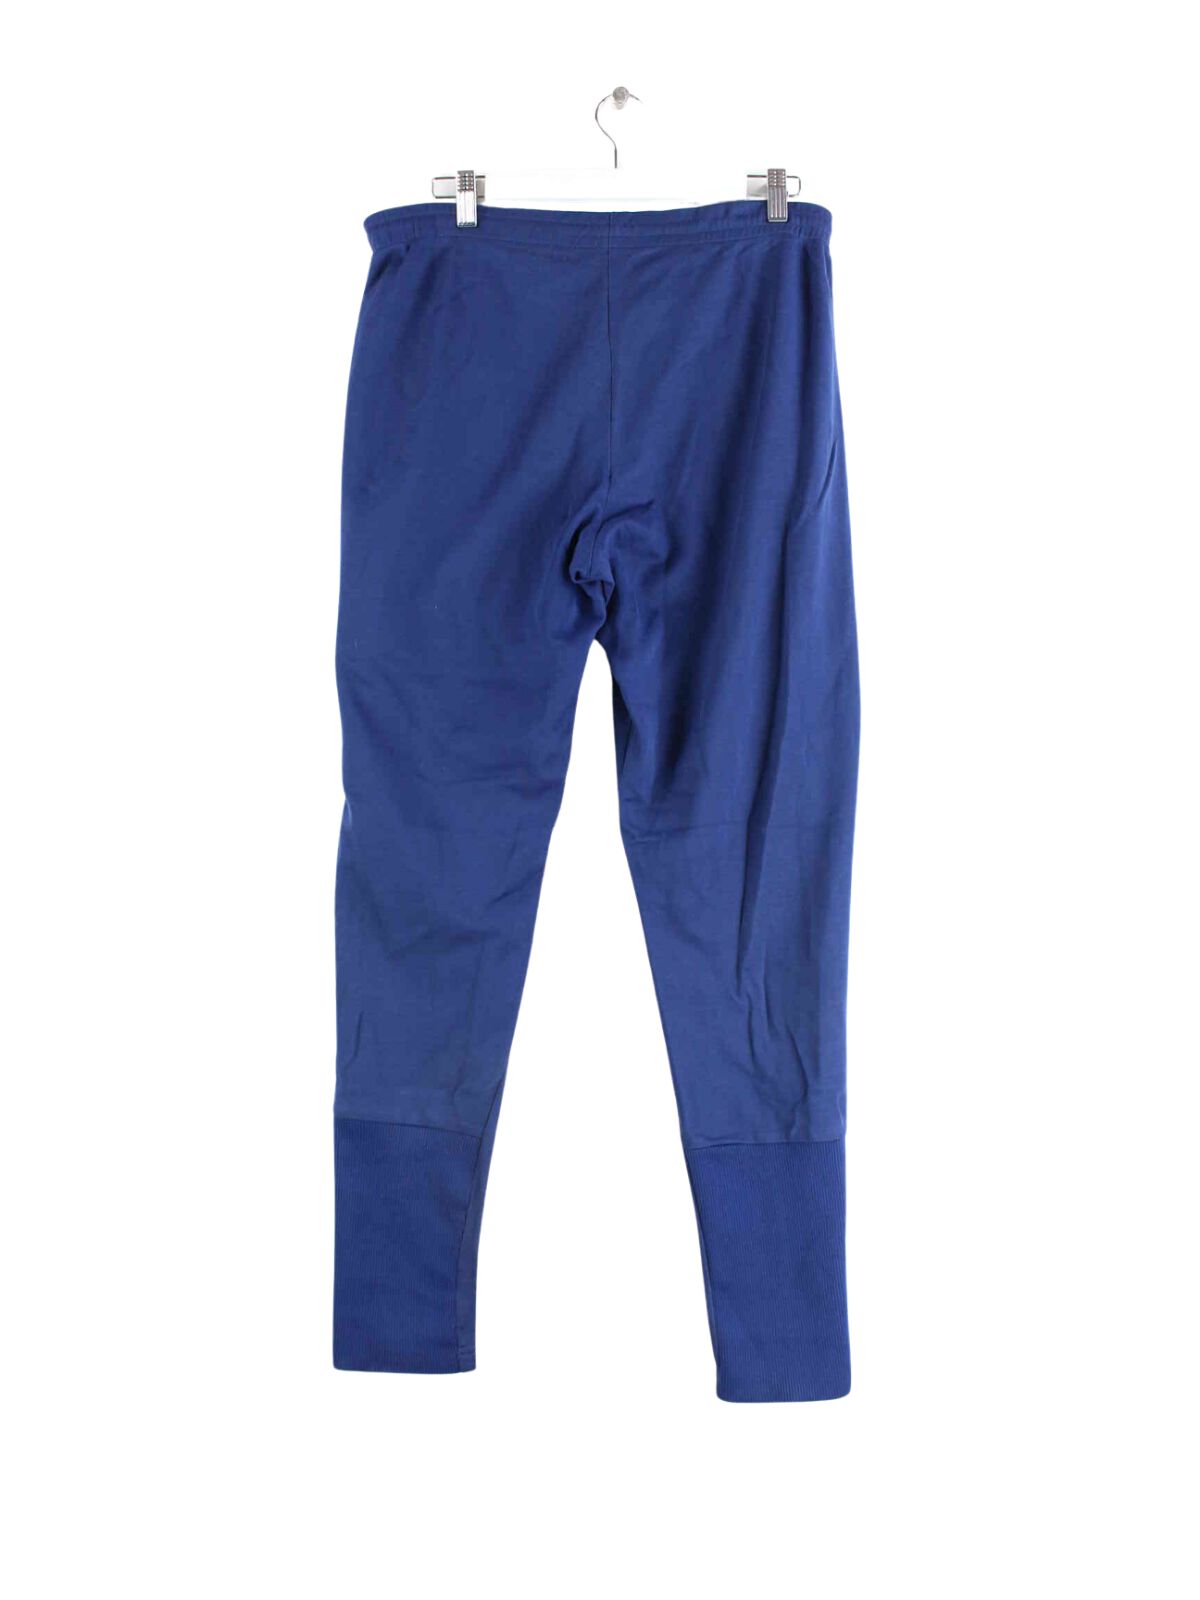 Adidas 80s Vintage Trefoil Track Pants Blau S (back image)